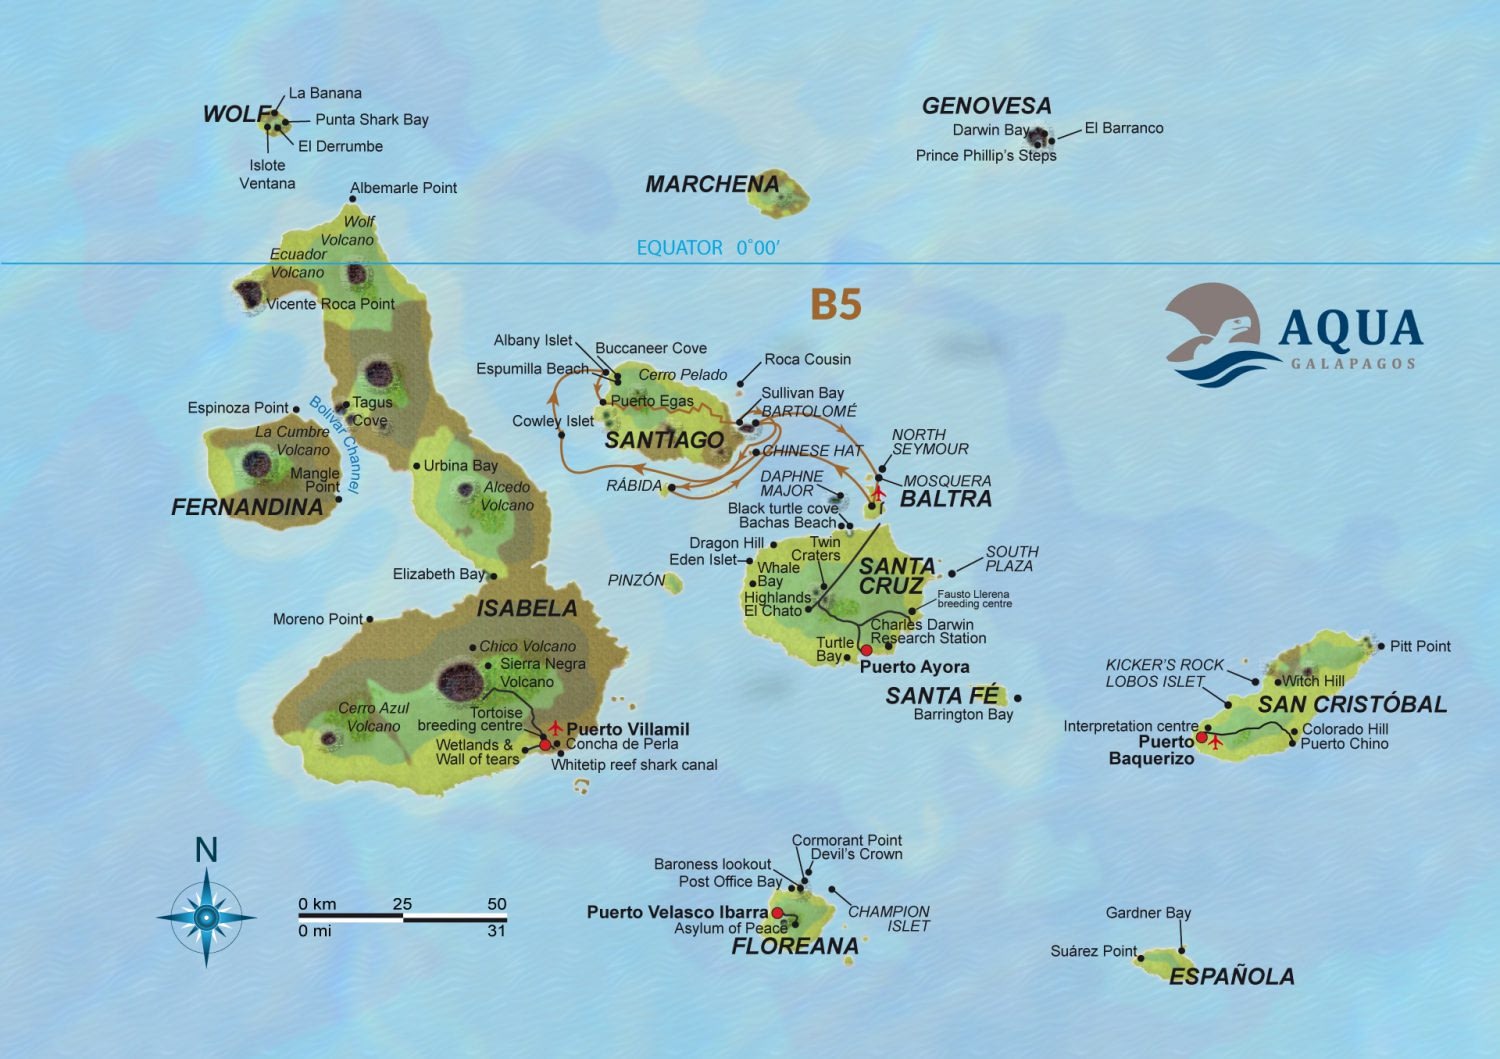 Galapagos Cruise Holiday Beyond Tourism